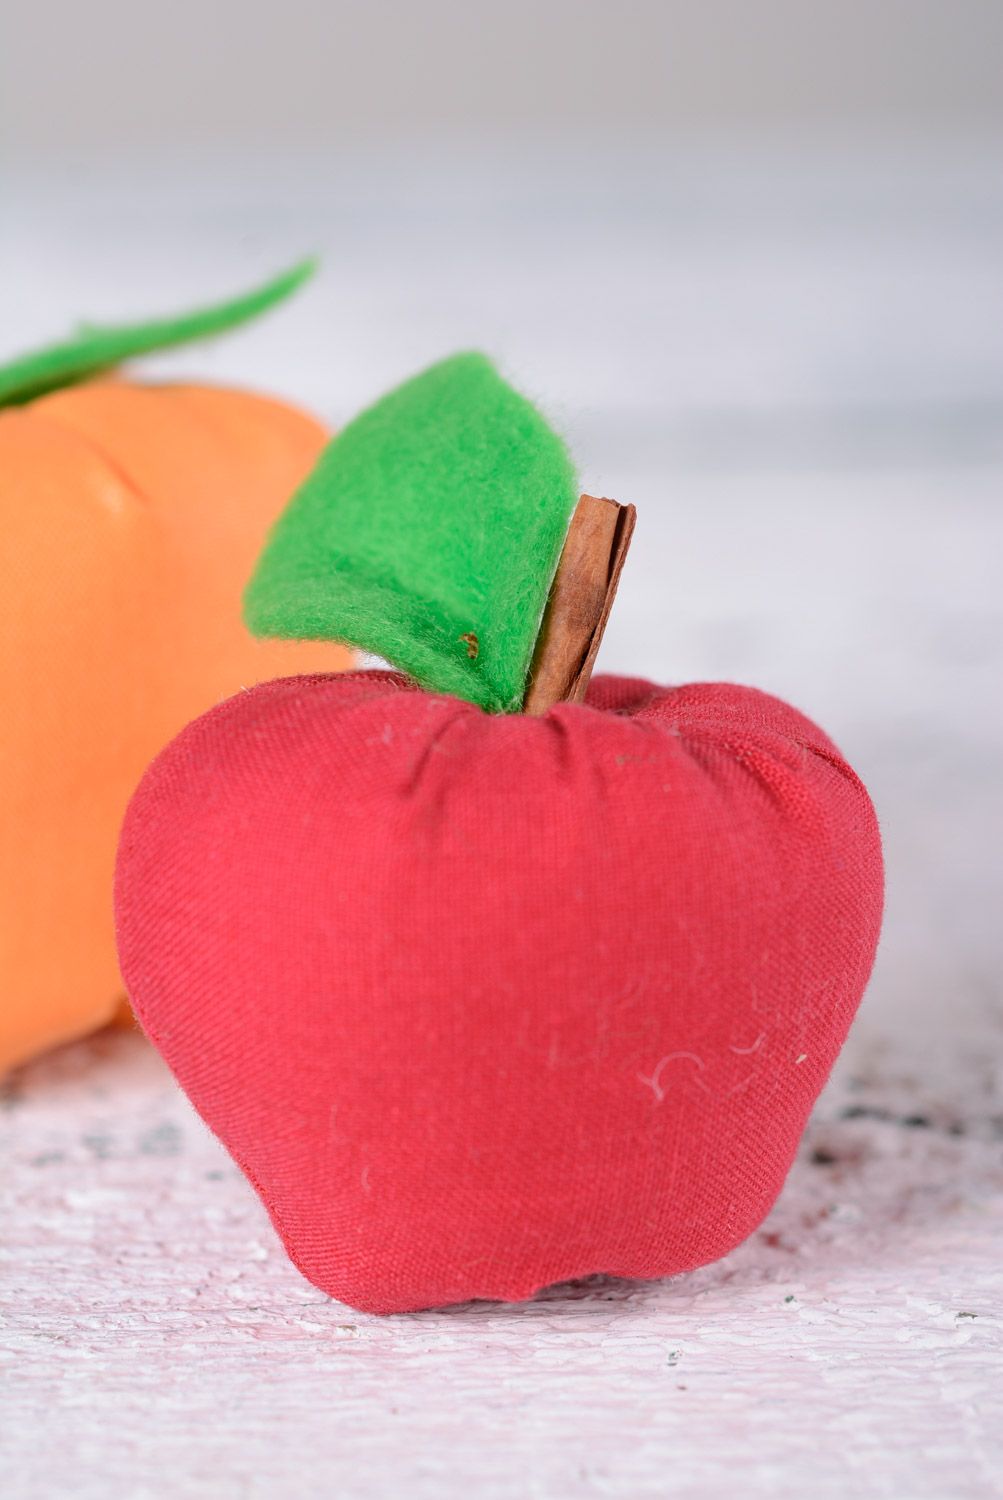 Интерьерная игрушка яблоко красное с палочкой корицы небольшое ручная работа фото 1